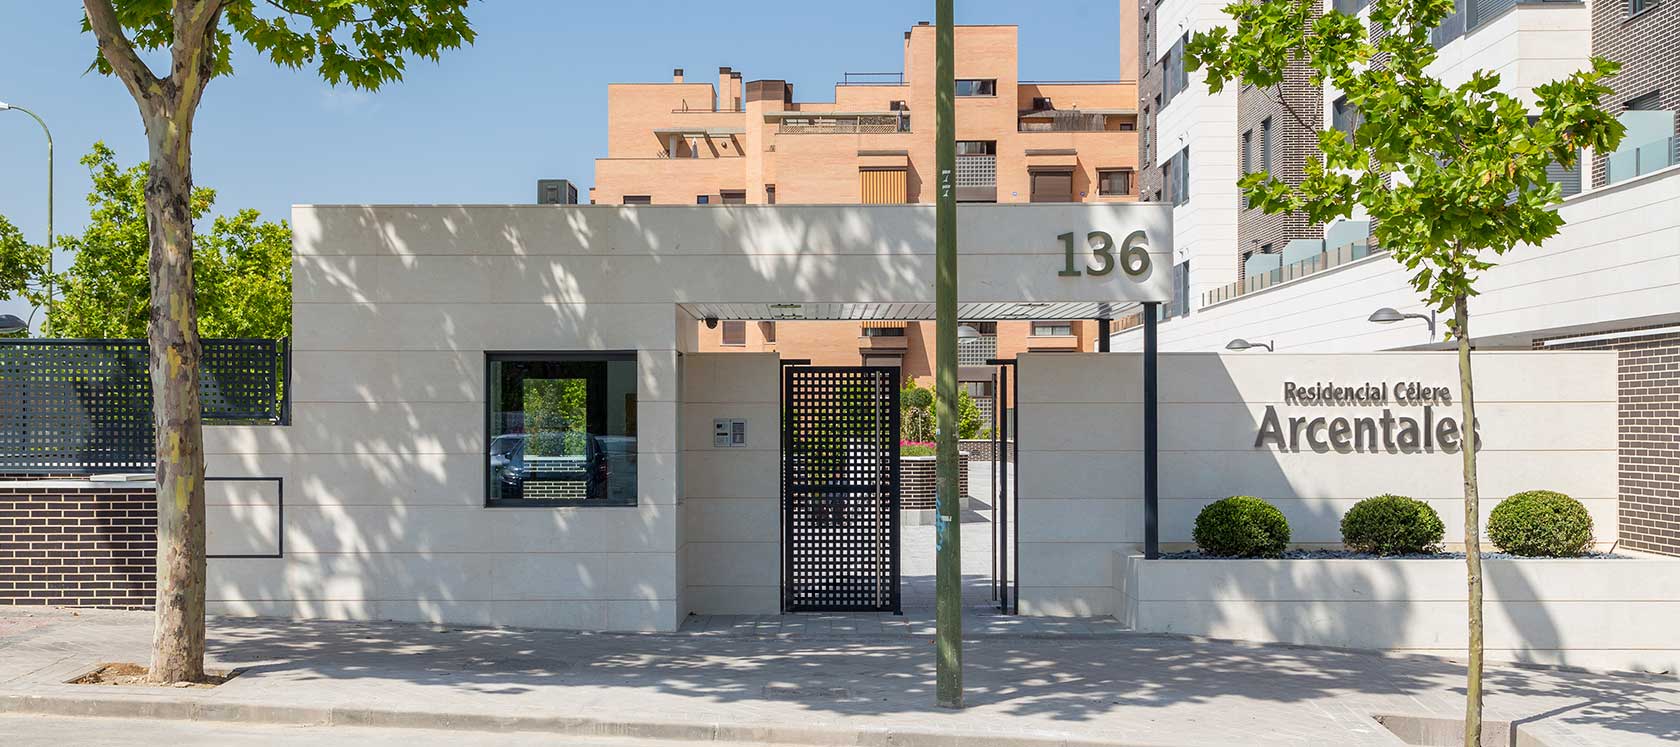 Pisos en ciudad lineal Madrid obra nueva arcentales